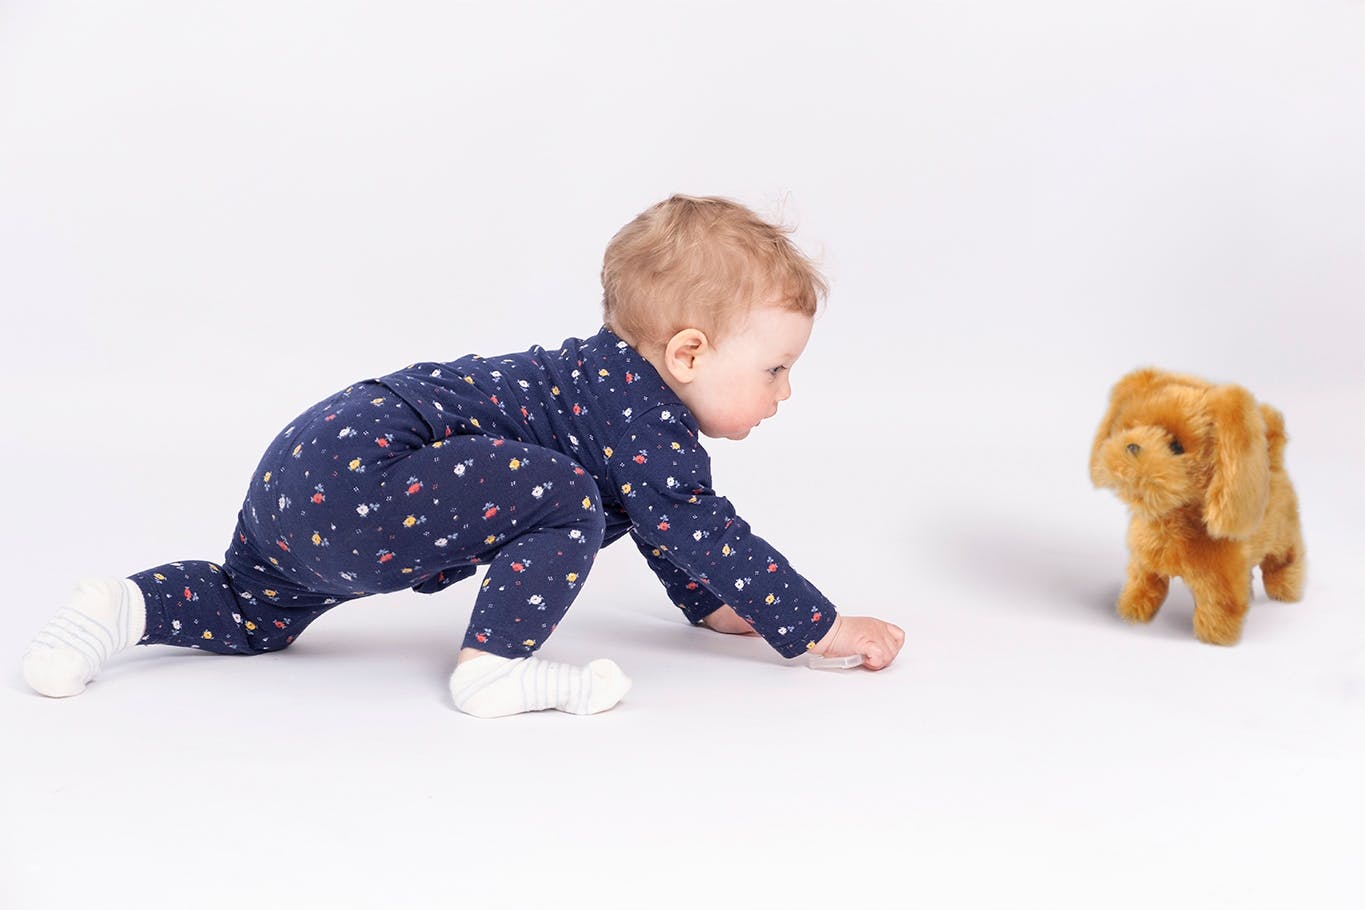 IsoTrade ljusbrun Stor Interaktiv Hund med barn